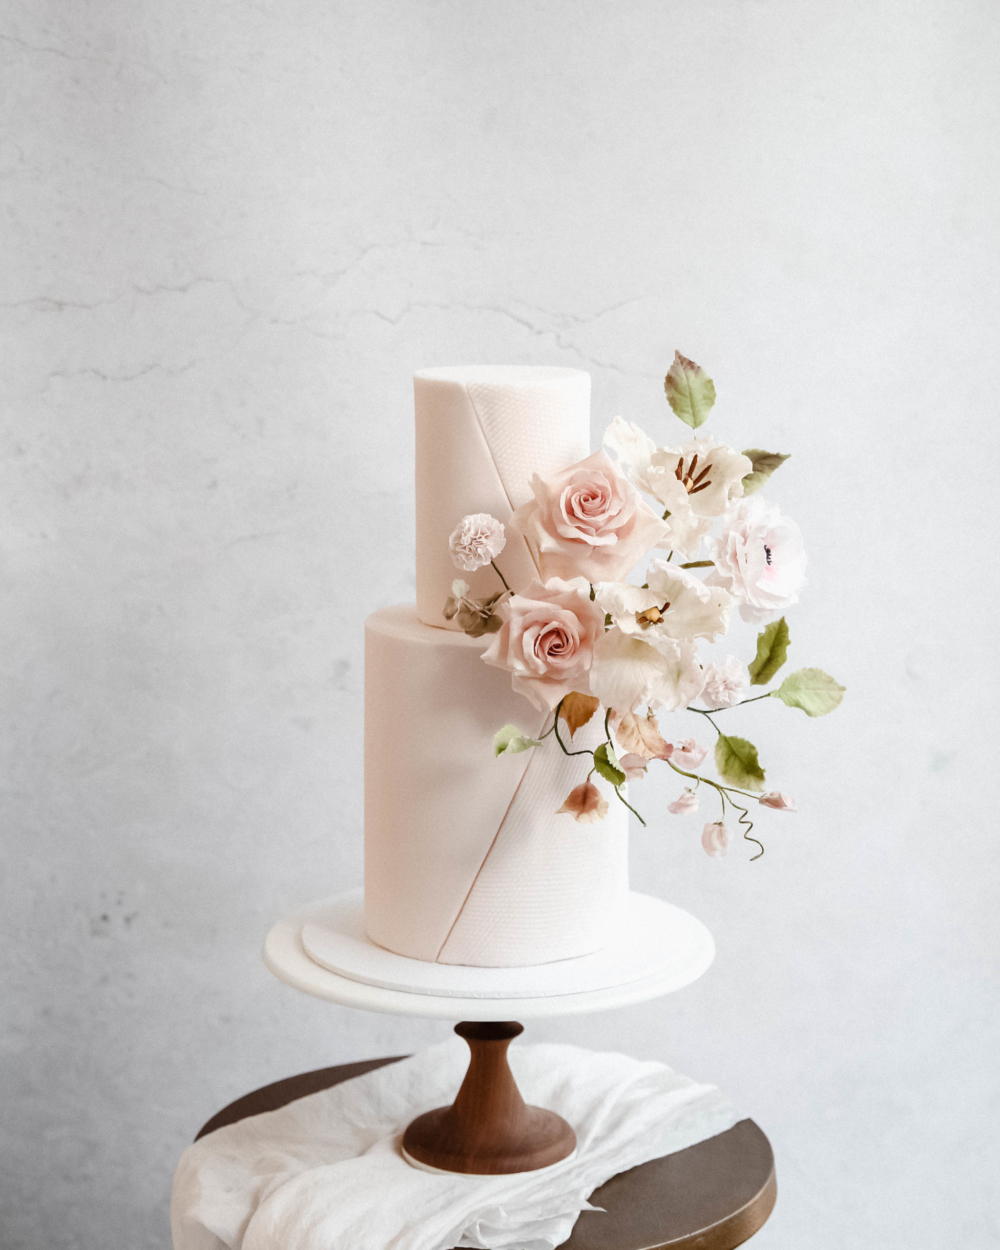 Designer Wedding Cakes by House of Elegant Cakes | Bridestory.com